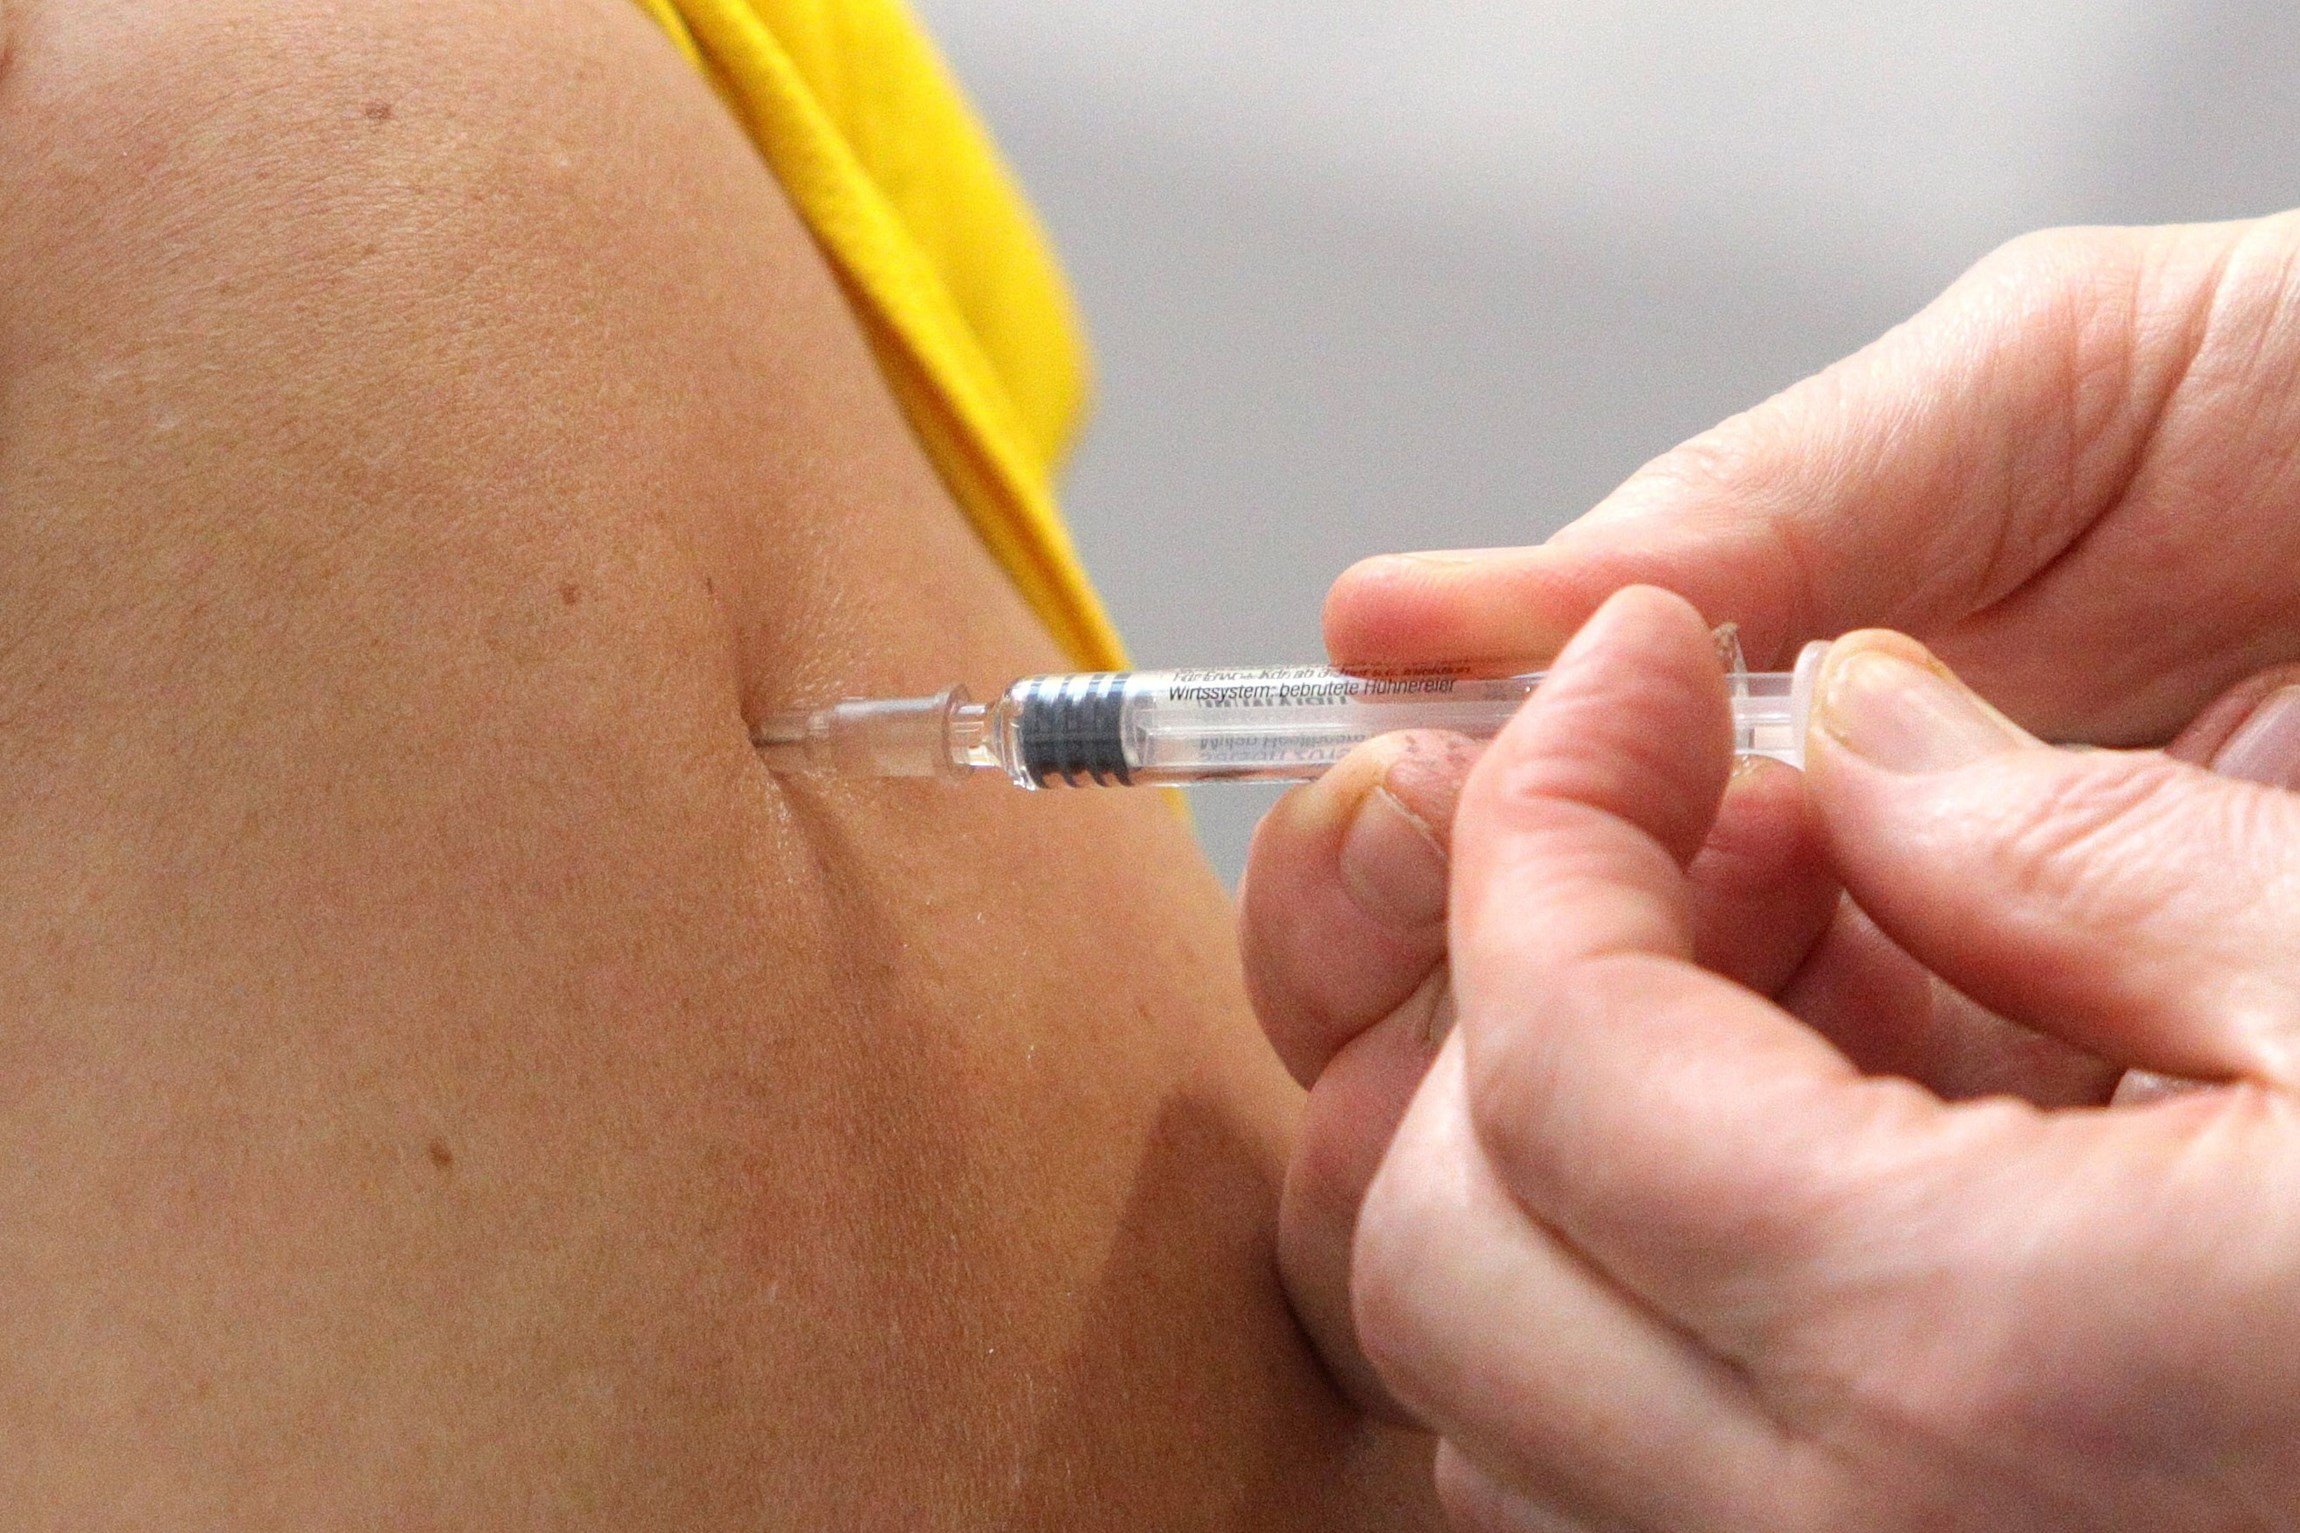 Oxford reprèn els assajos de la seva vacuna contra el coronavirus